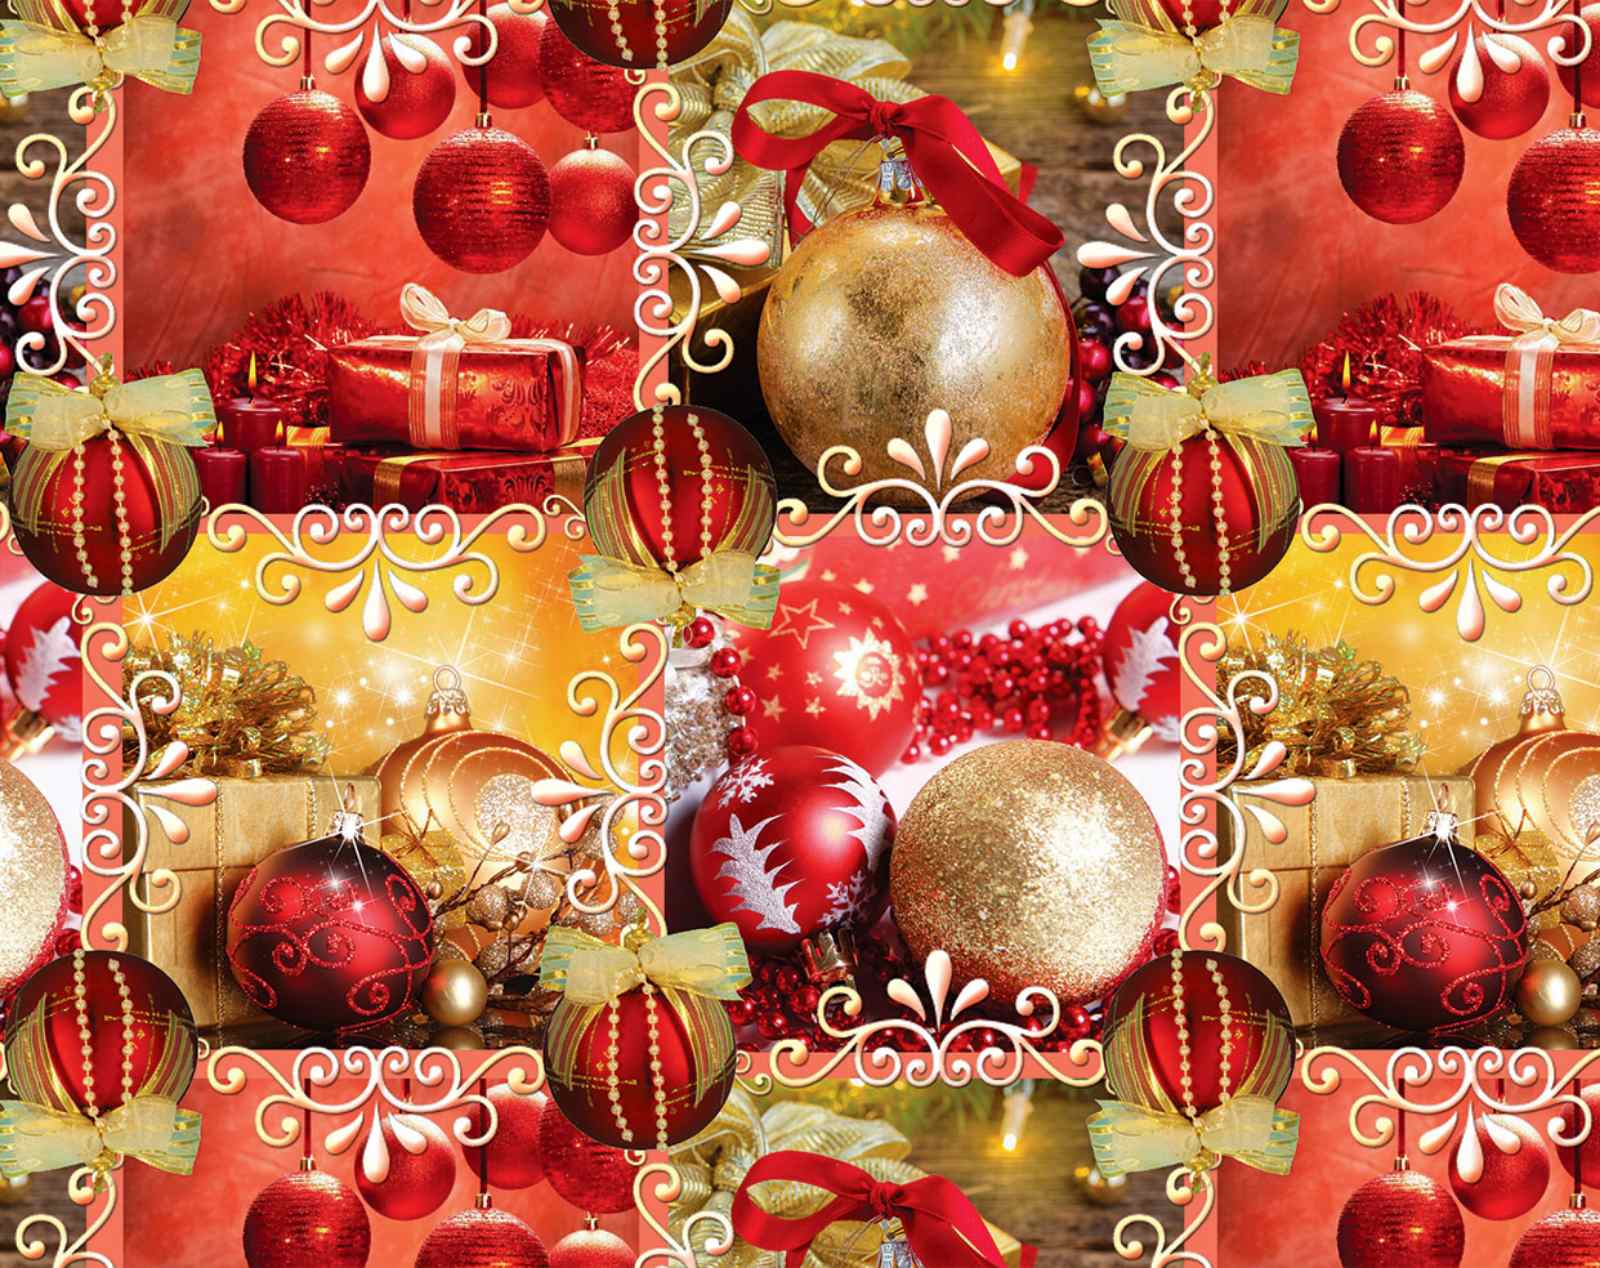 Бумага новогодняя мелованная для упаковки подарков 80г 100х70 -10 листов Красный Unison (PVM10-259NY)